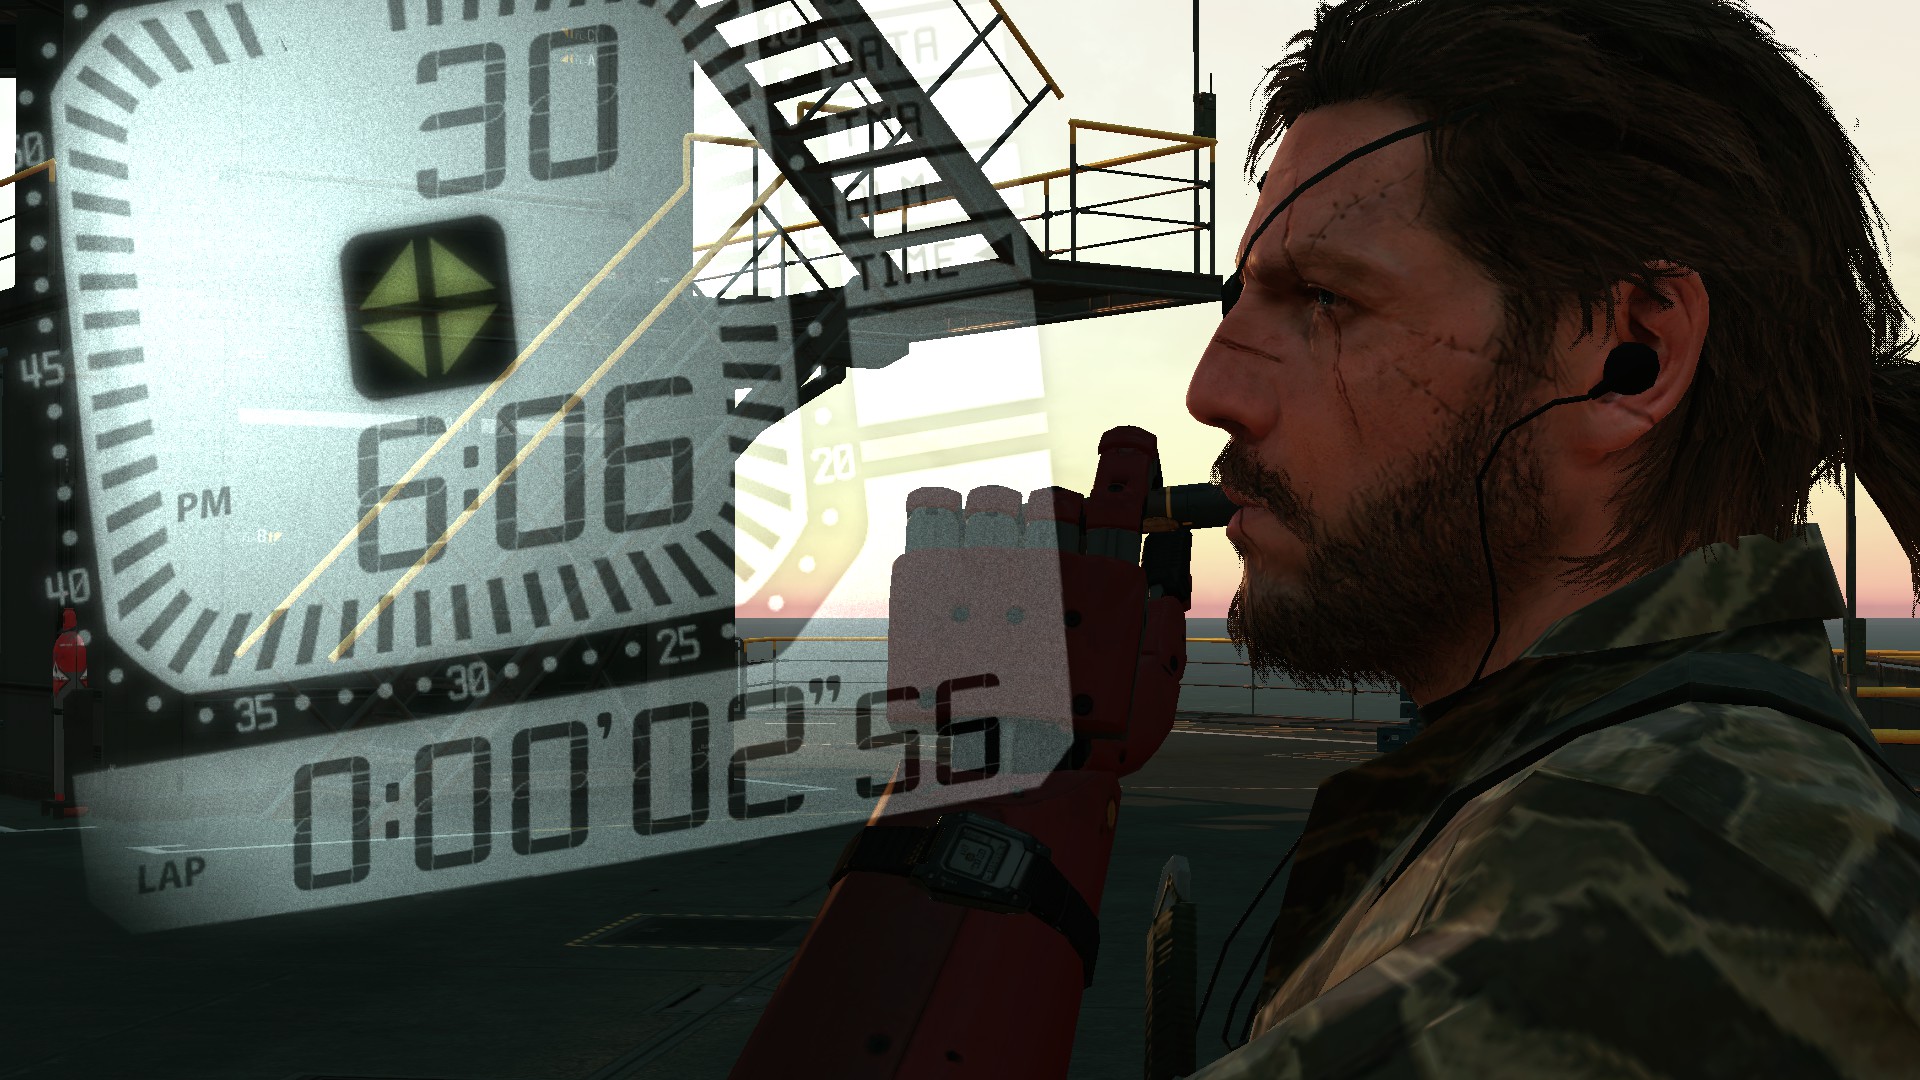 Metal Gear Solid 5 Boss